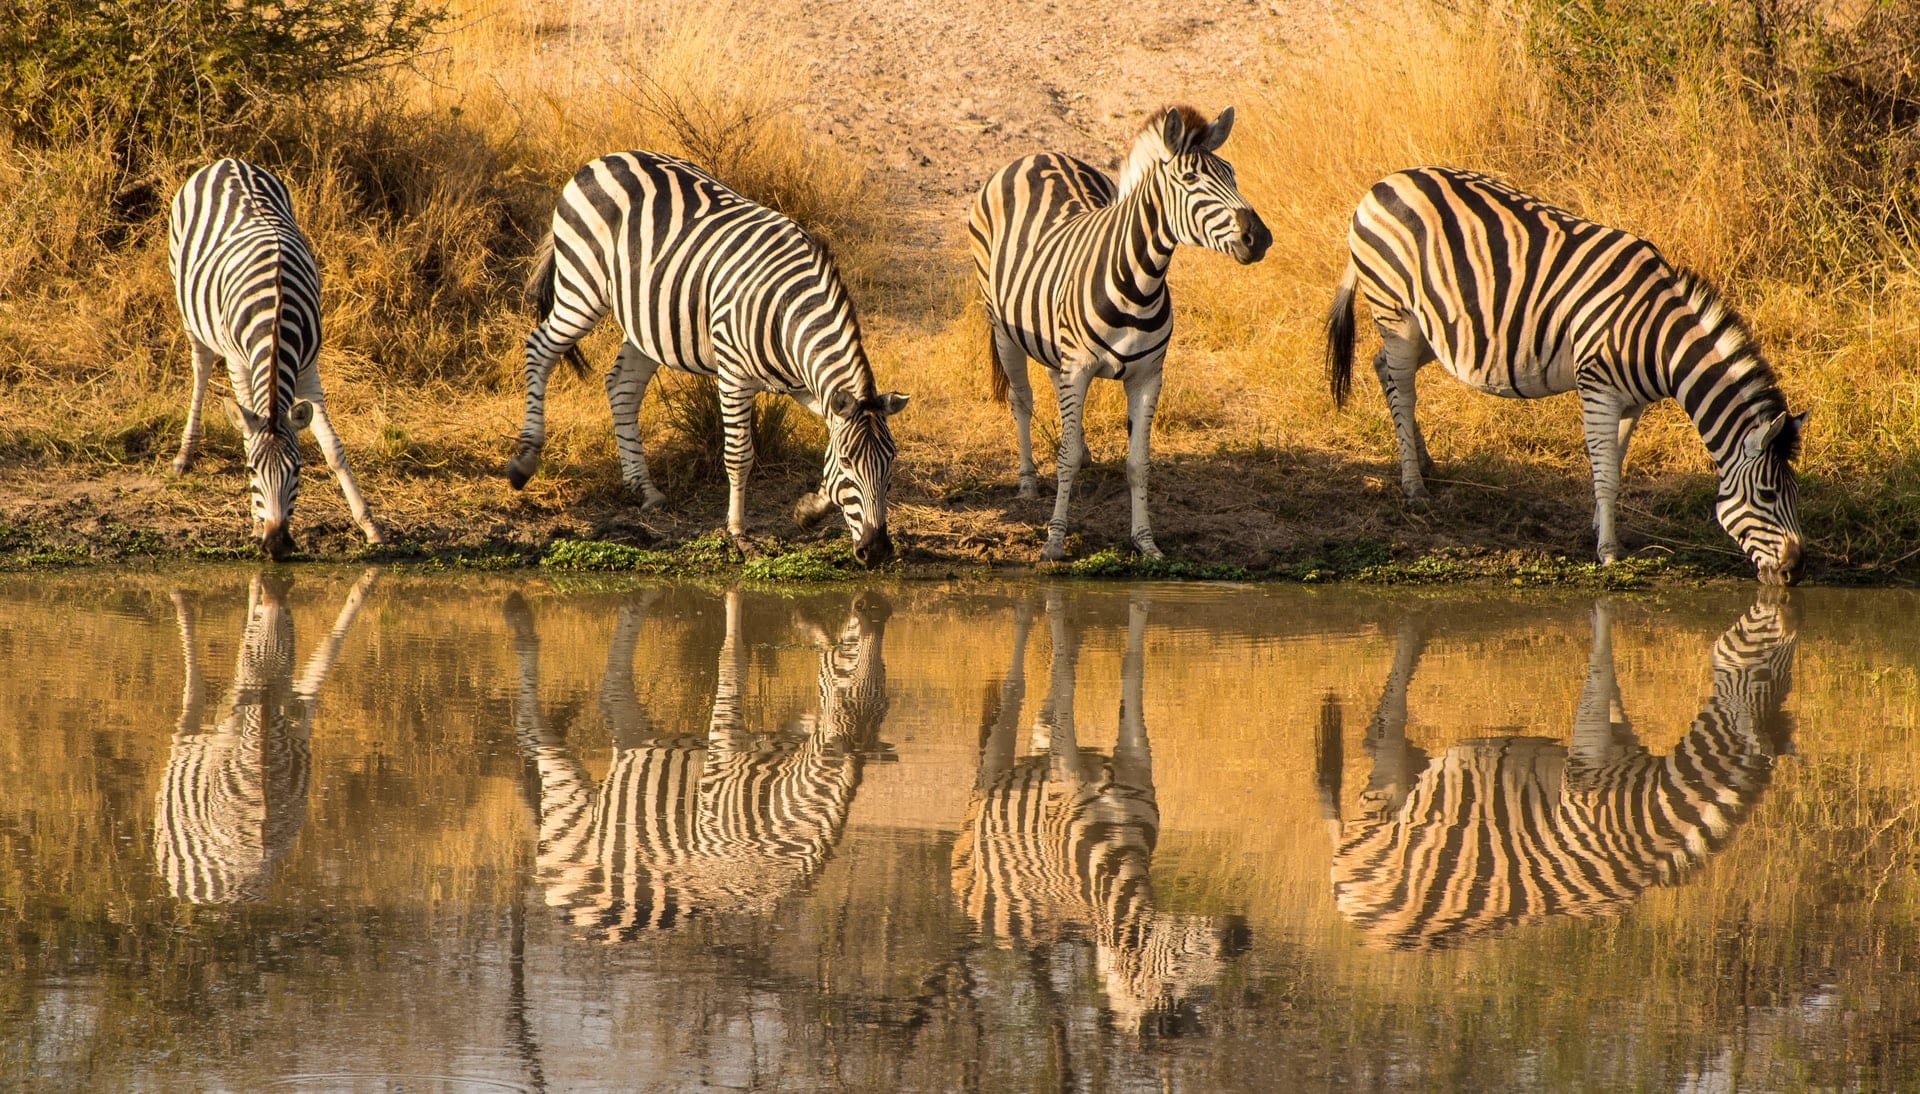 Zebras taking water at Kruger National Park - Africa